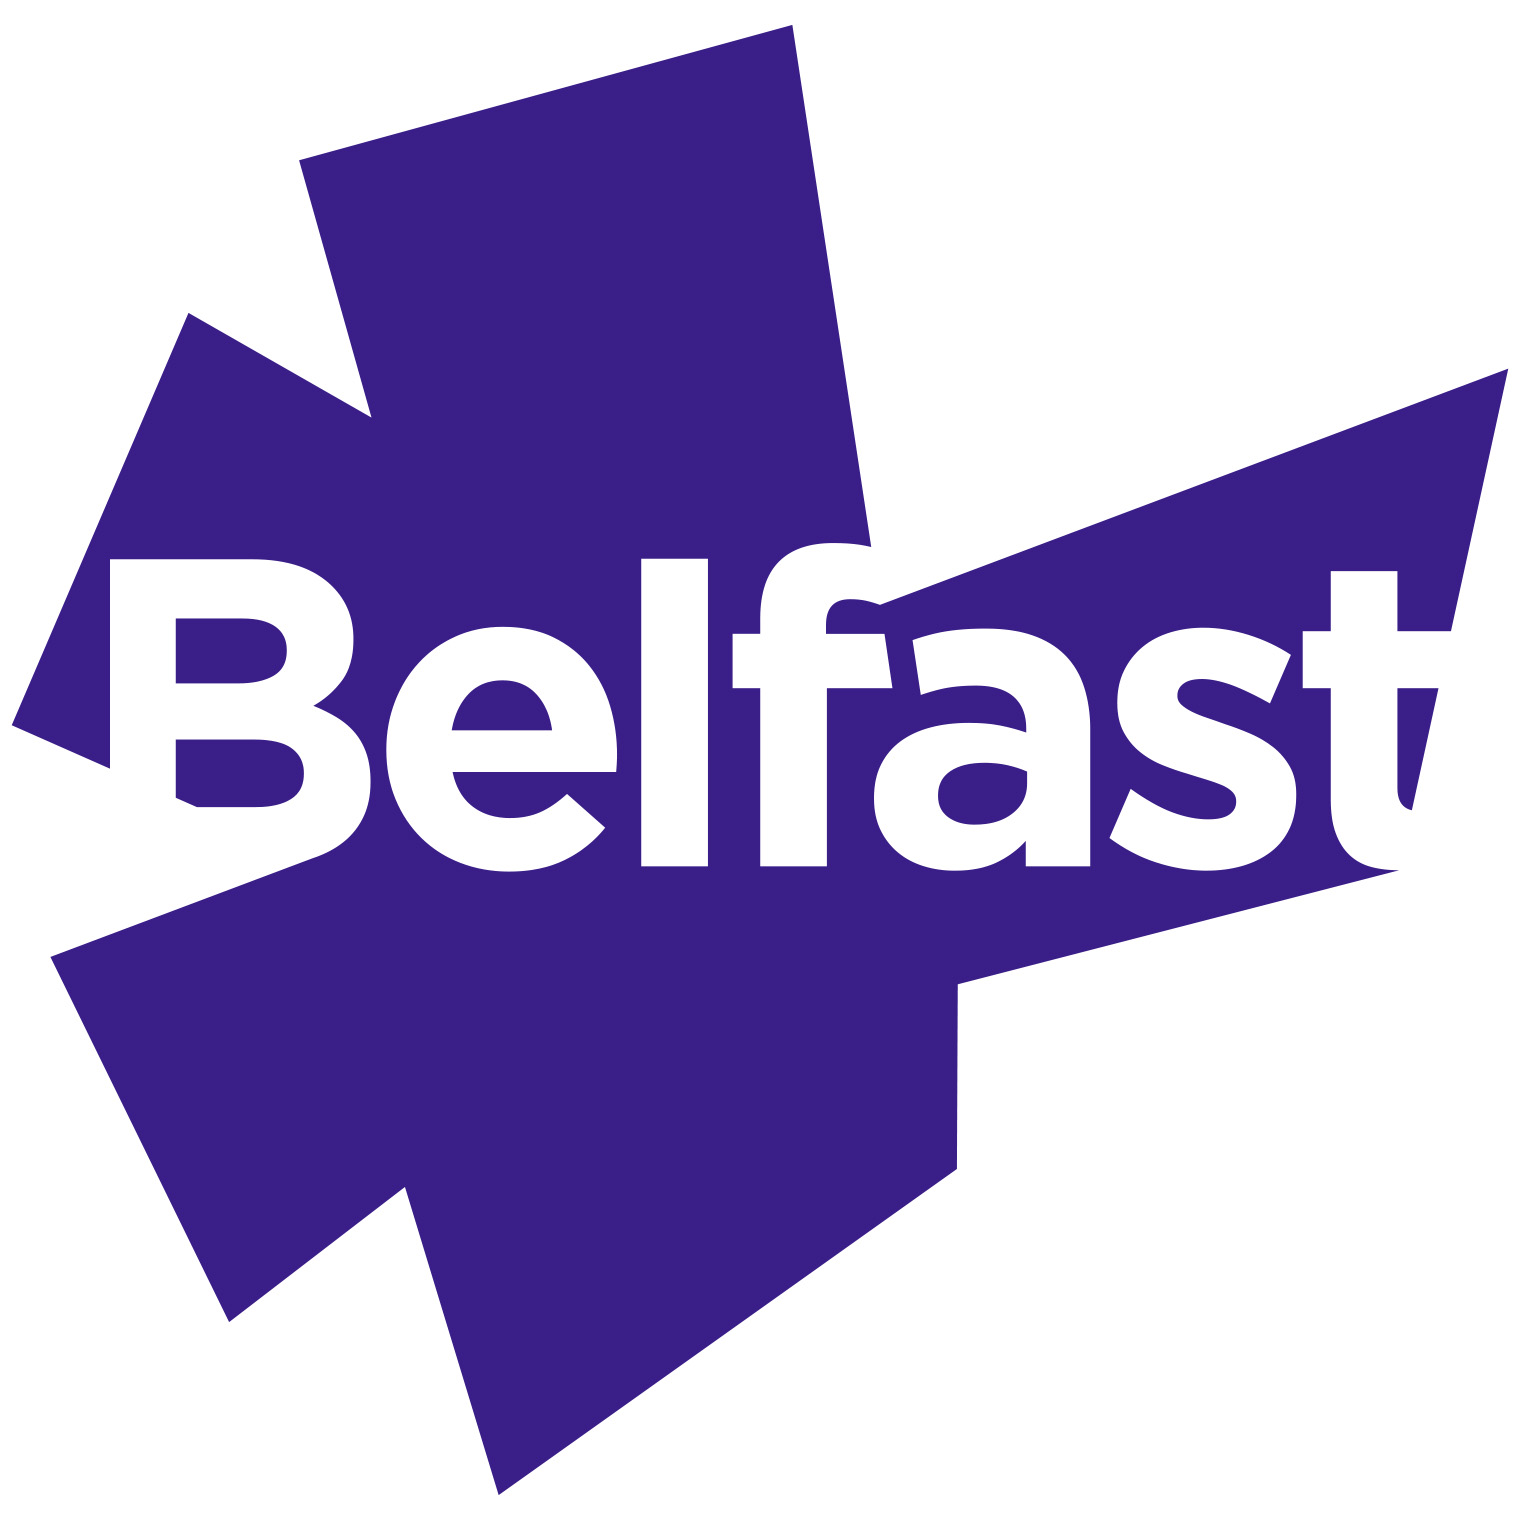 Belfast Starburst Logo purple